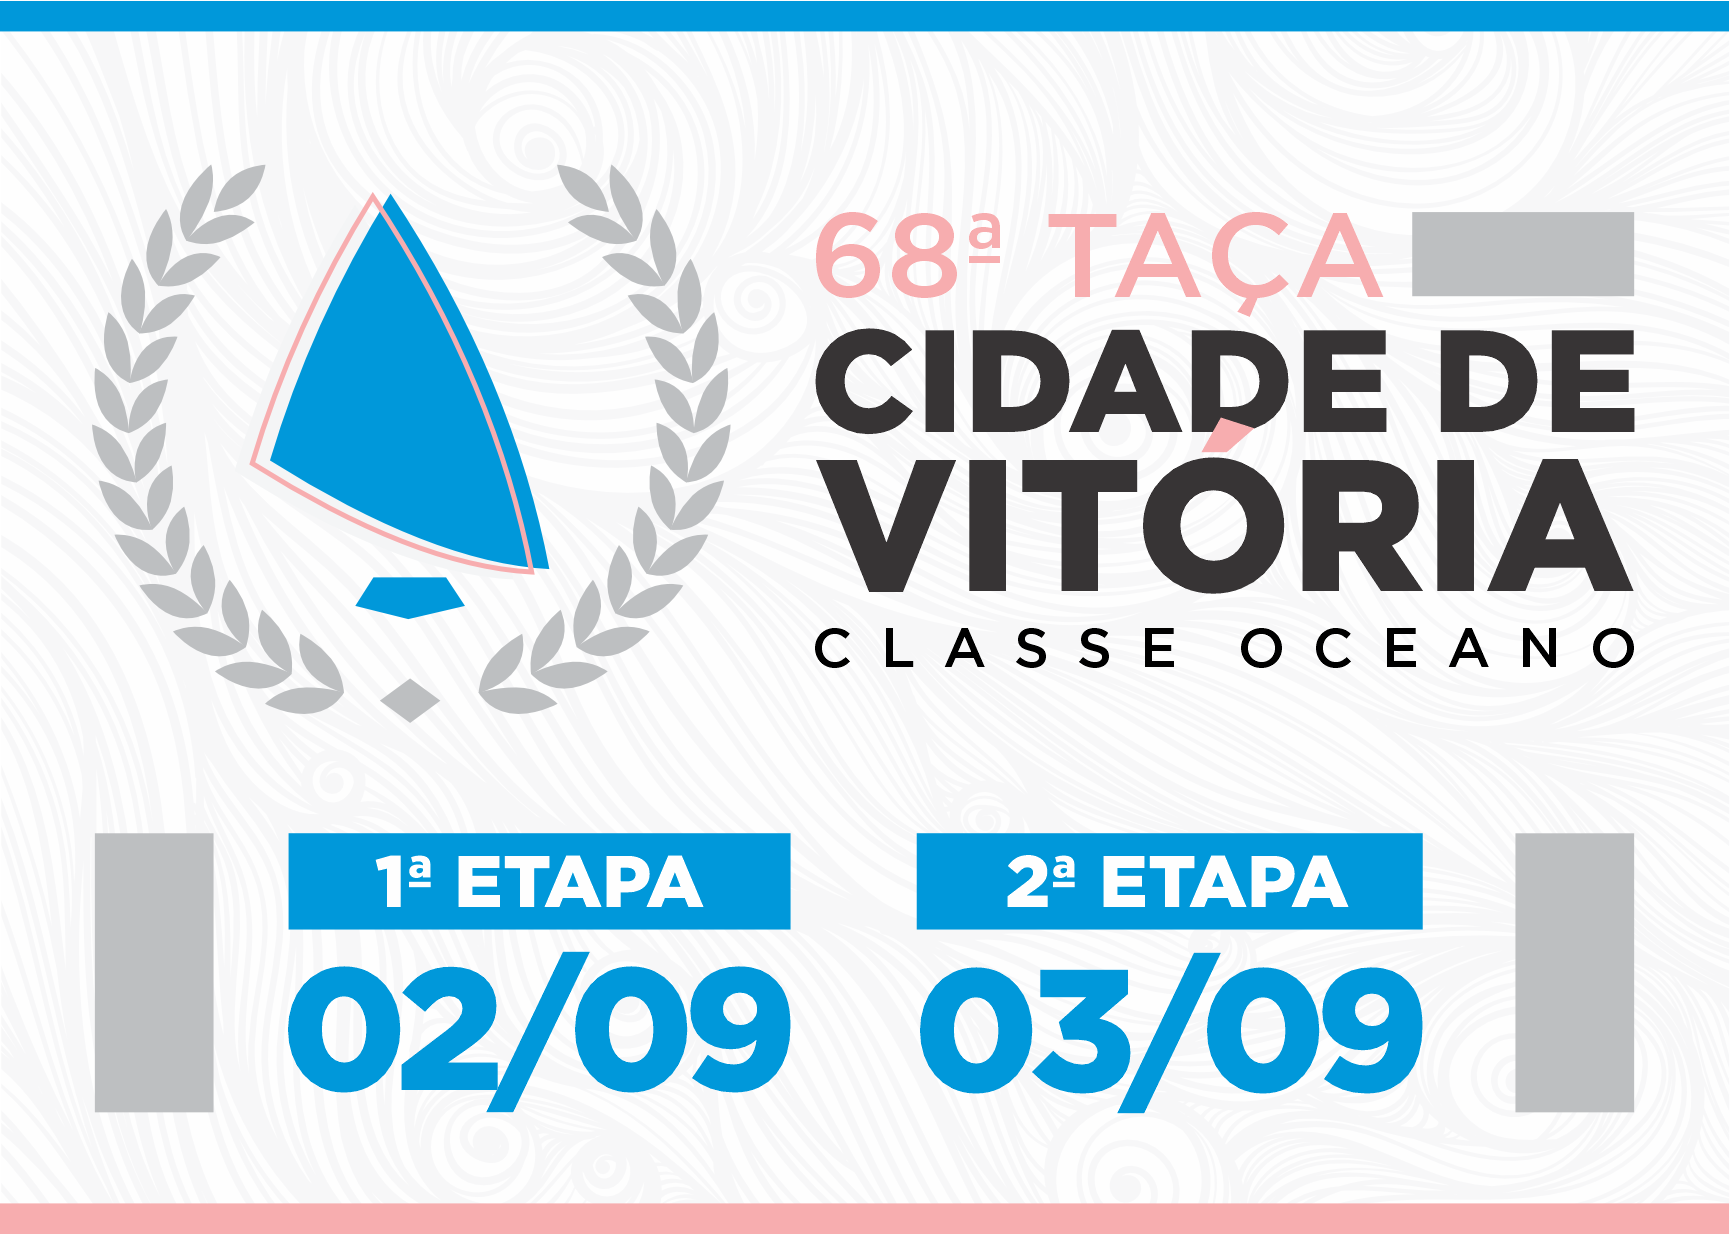 68ª Taça Cidade de Vitória (CLASSE OCEANO)